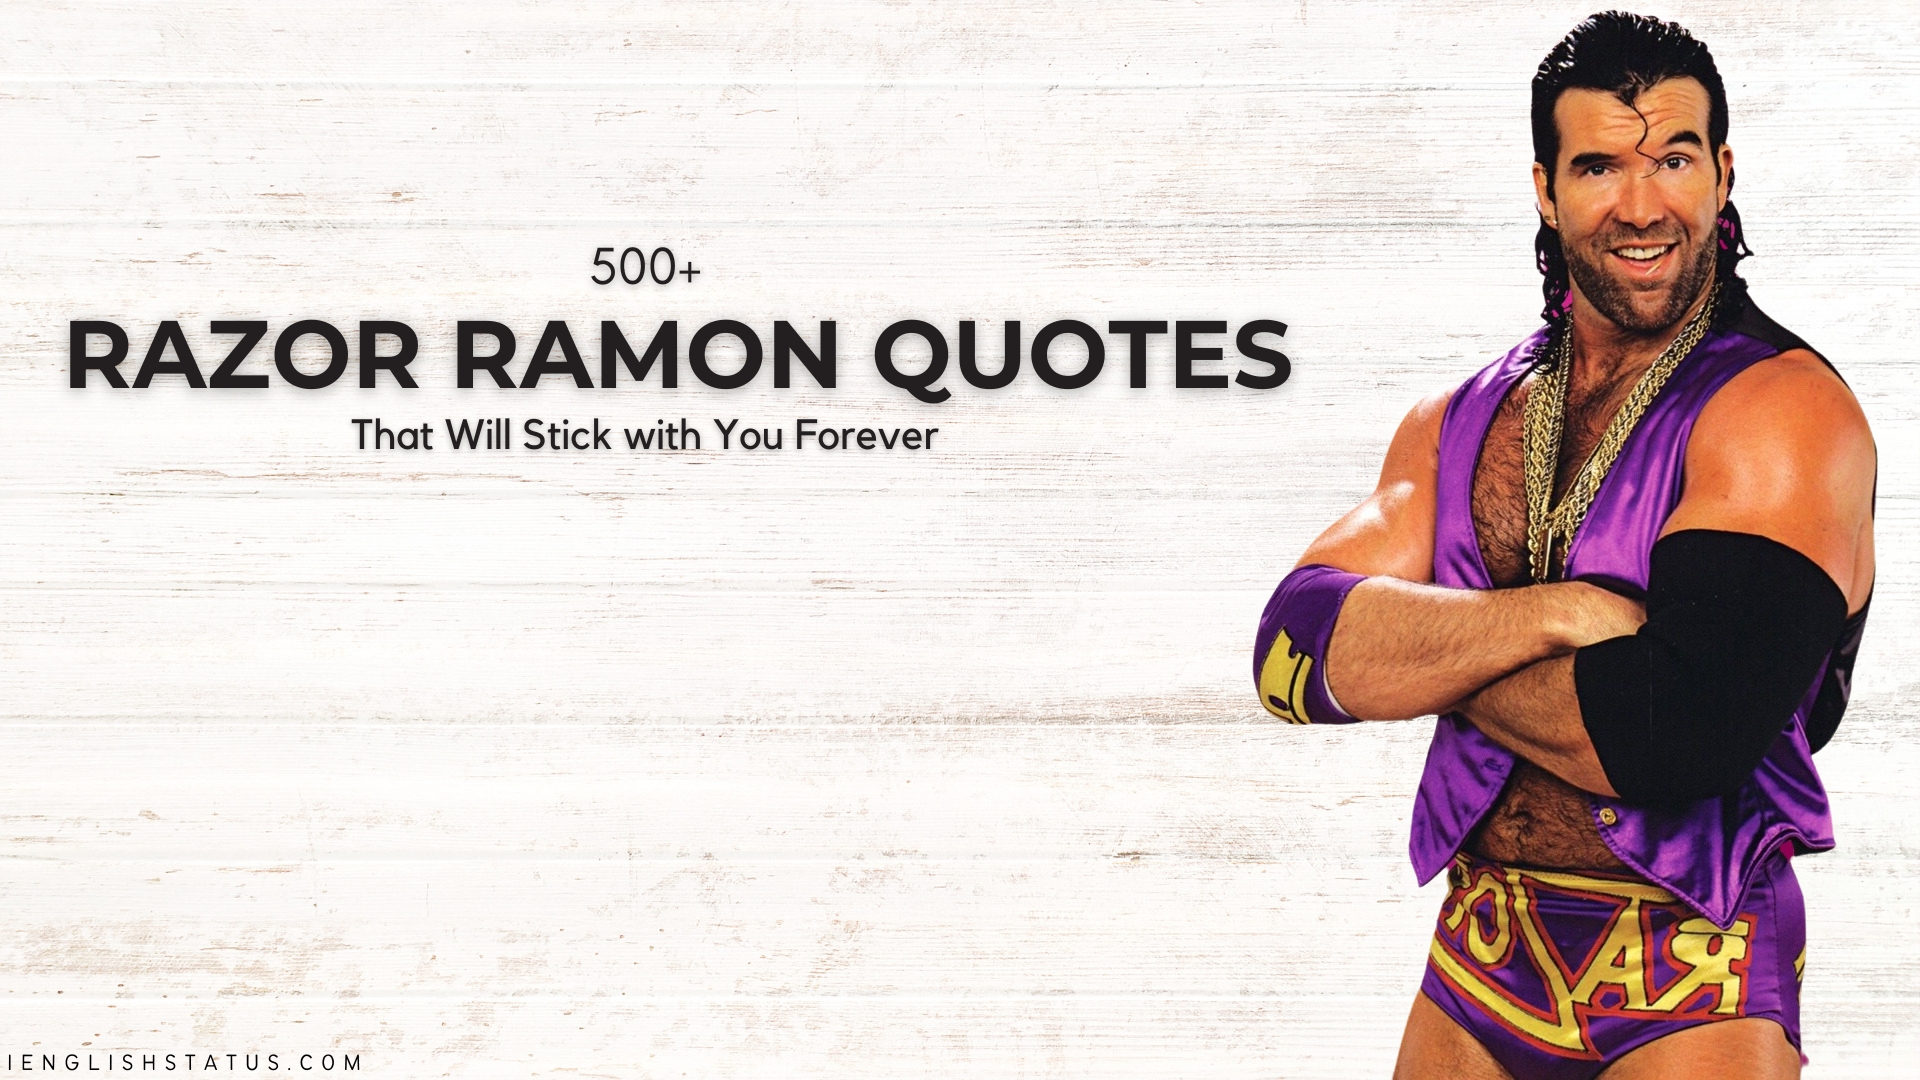 Razor Ramon Quotes